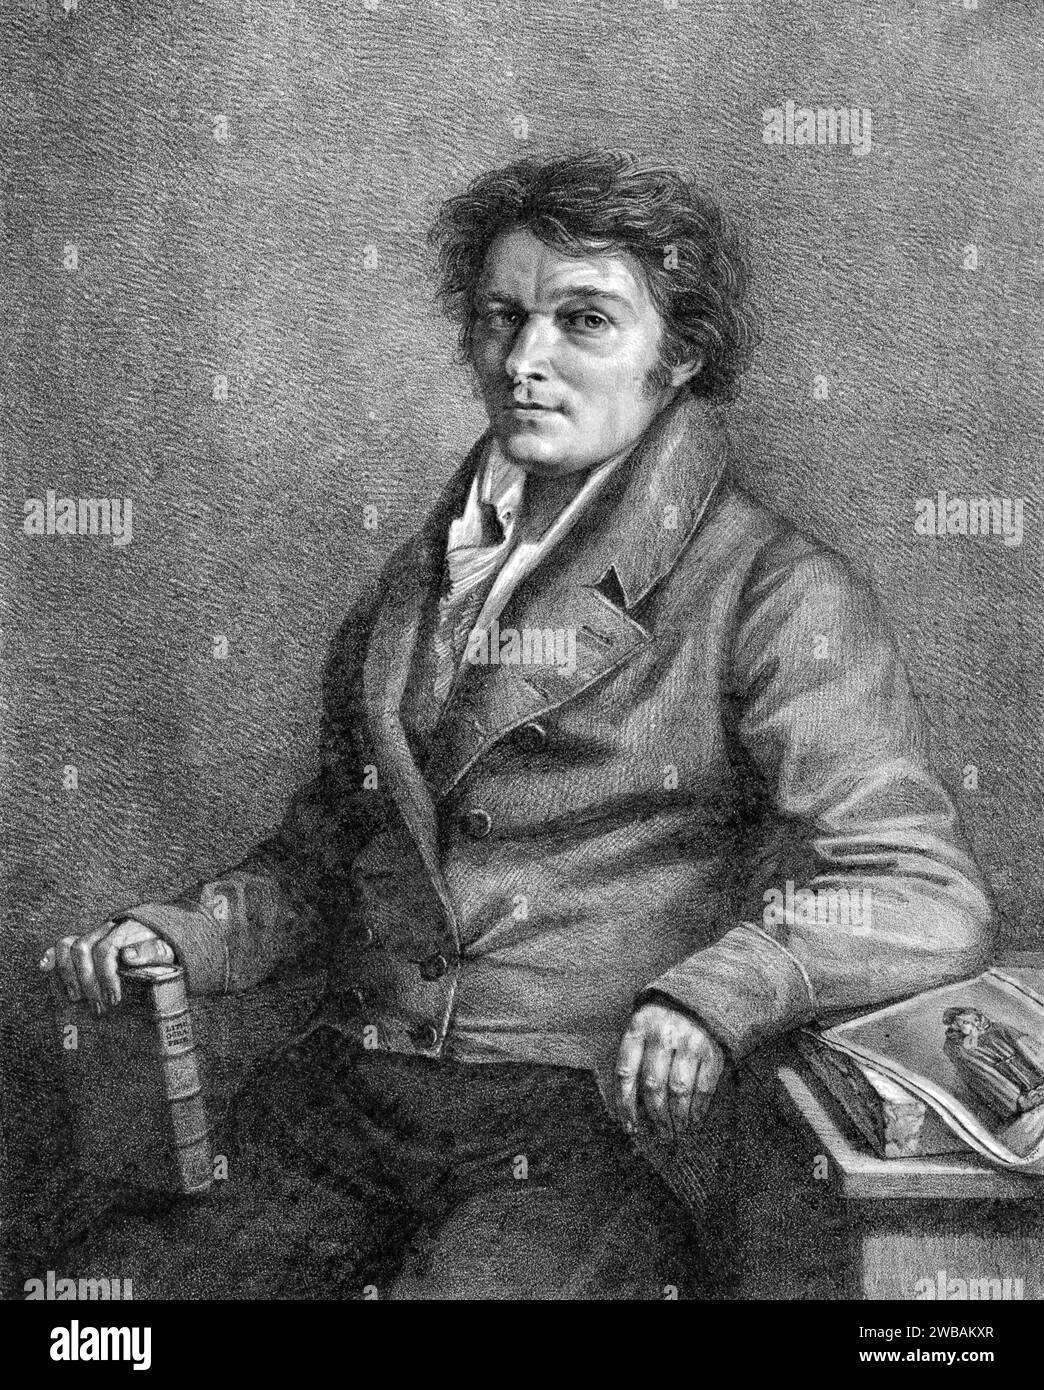 Alois Senefelder. Portrait de l'acteur et dramaturge allemand Johann Alois Senefelder (1771-1834) par Lorenzo Quaglio le Jeune, lithographie, 1818. Senefelder a inventé la technique d'impression de la lithographie dans les années 1790 Banque D'Images